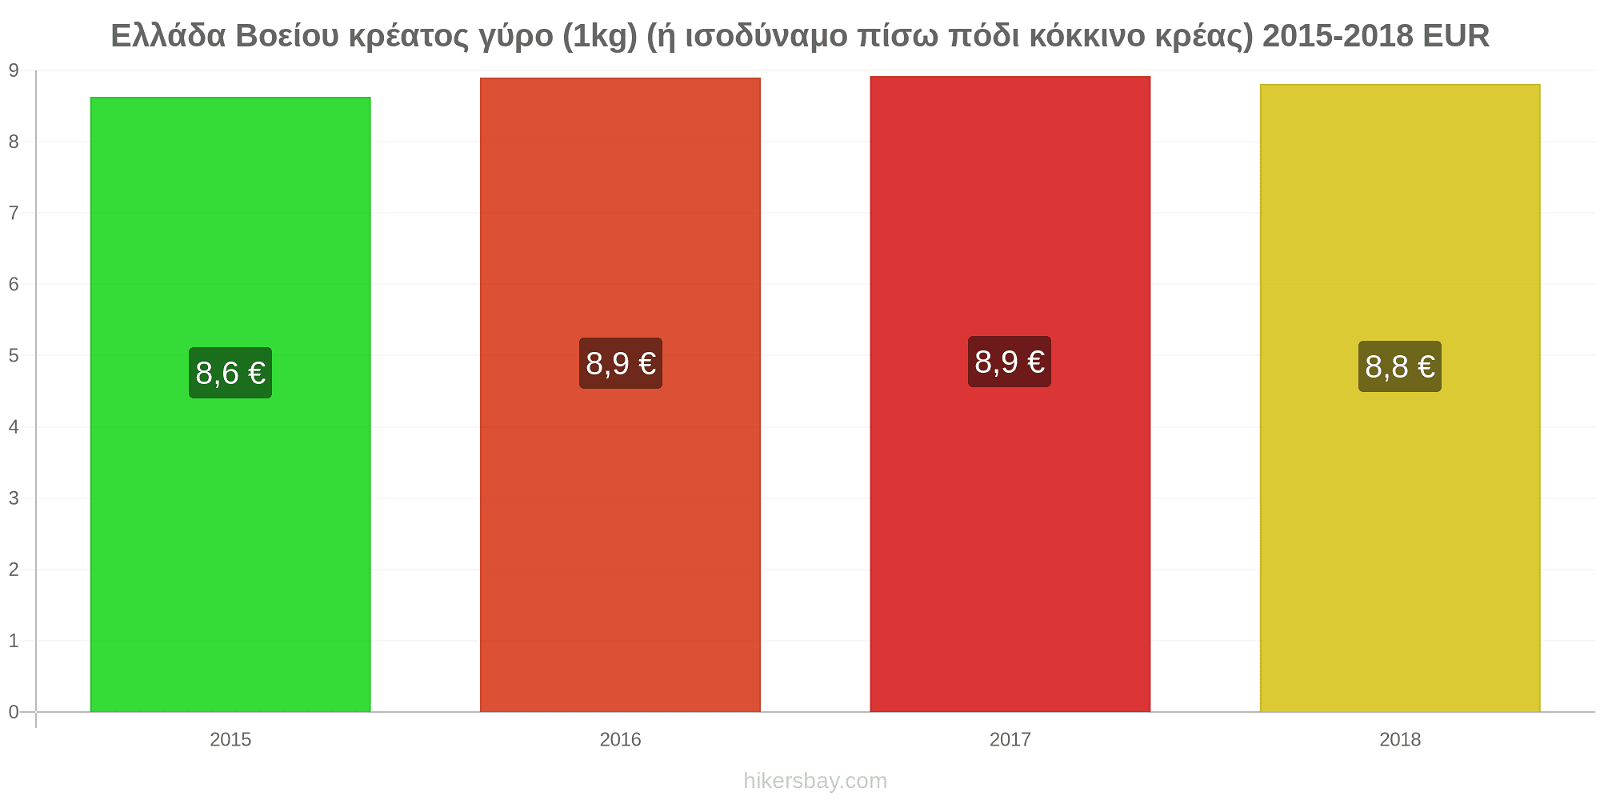 Ελλάδα αλλαγές τιμών Βοείου κρέατος γύρο (1kg) (ή ισοδύναμο πίσω πόδι κόκκινο κρέας) hikersbay.com